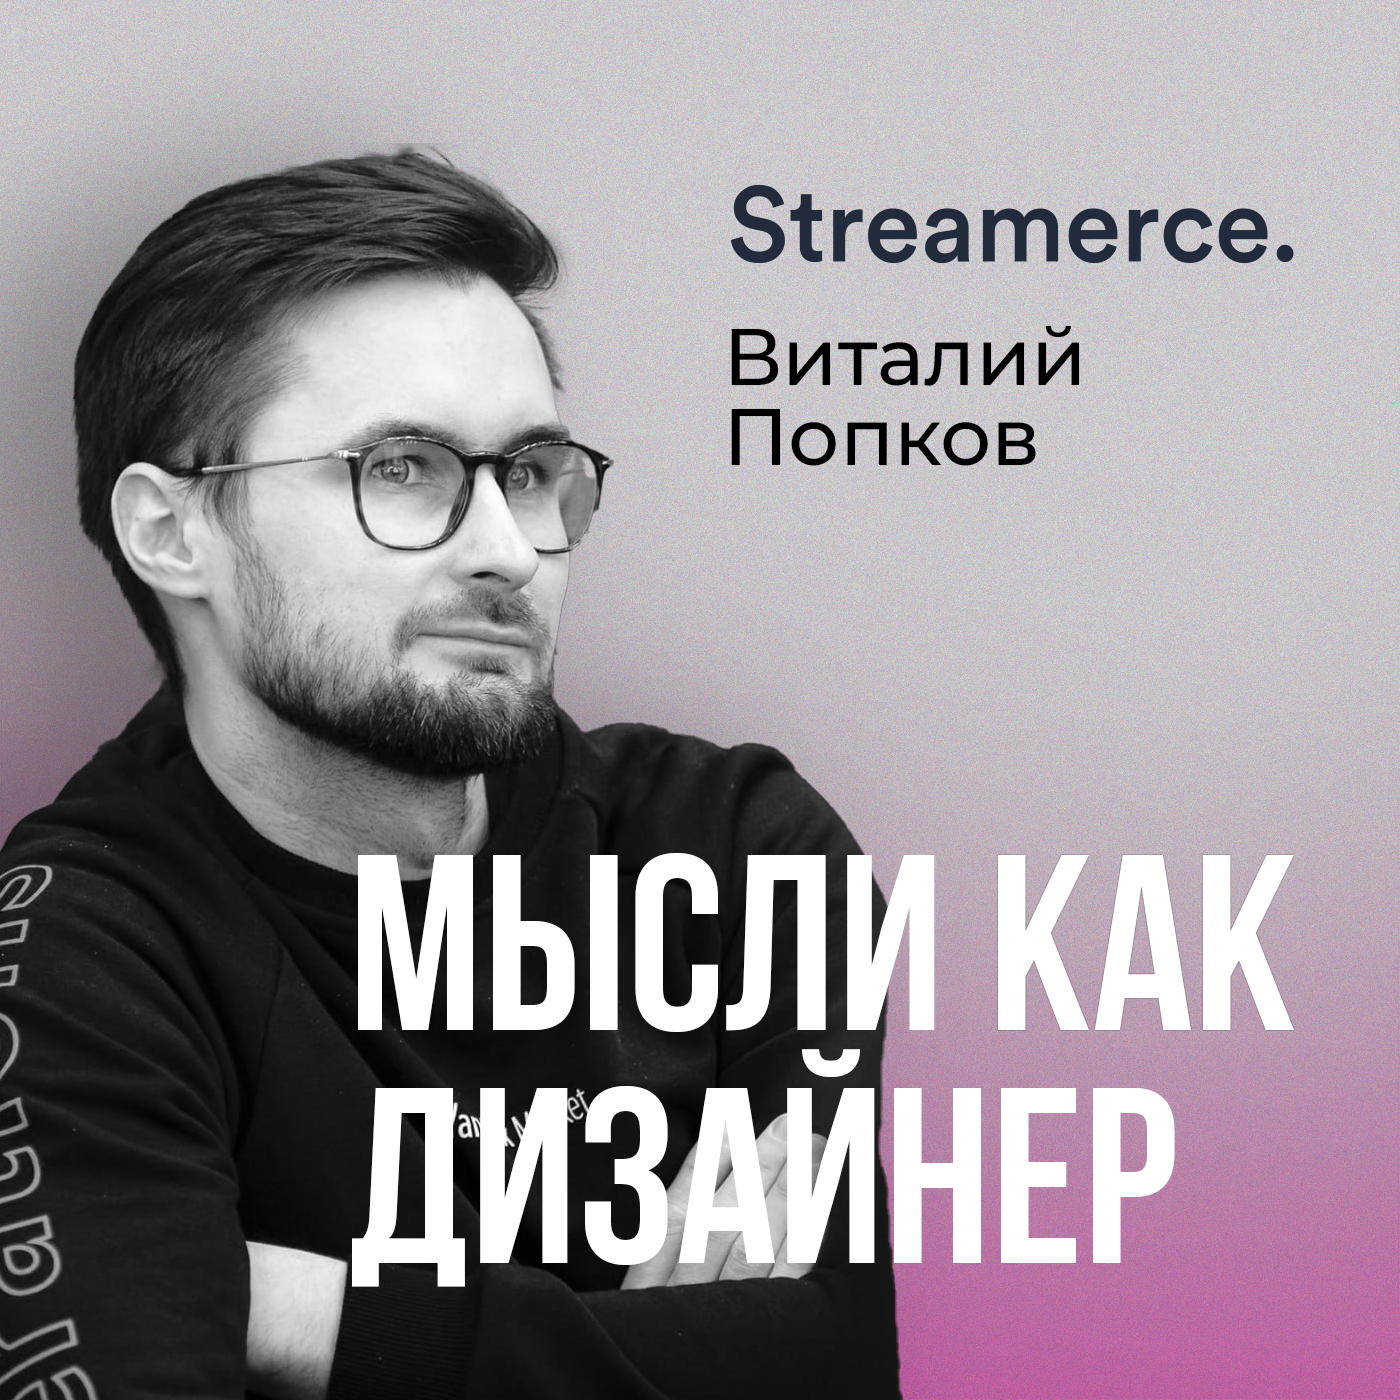 Виталий Попков из Streamerce – про eCommerce, дух стартапа и будущее